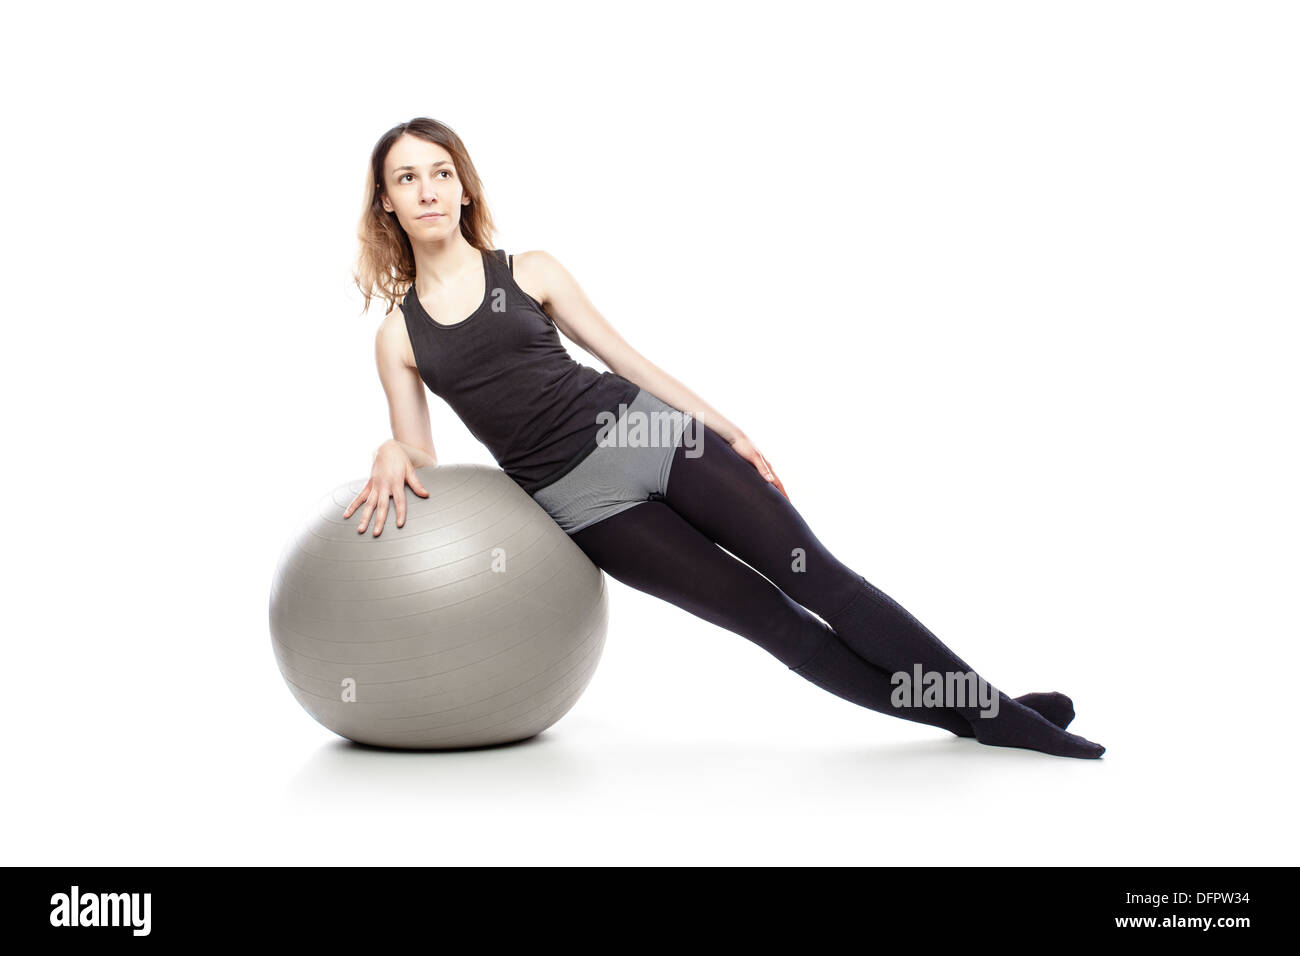 Caucasian woman l'exercice de pilates poses, isolé en studio Banque D'Images